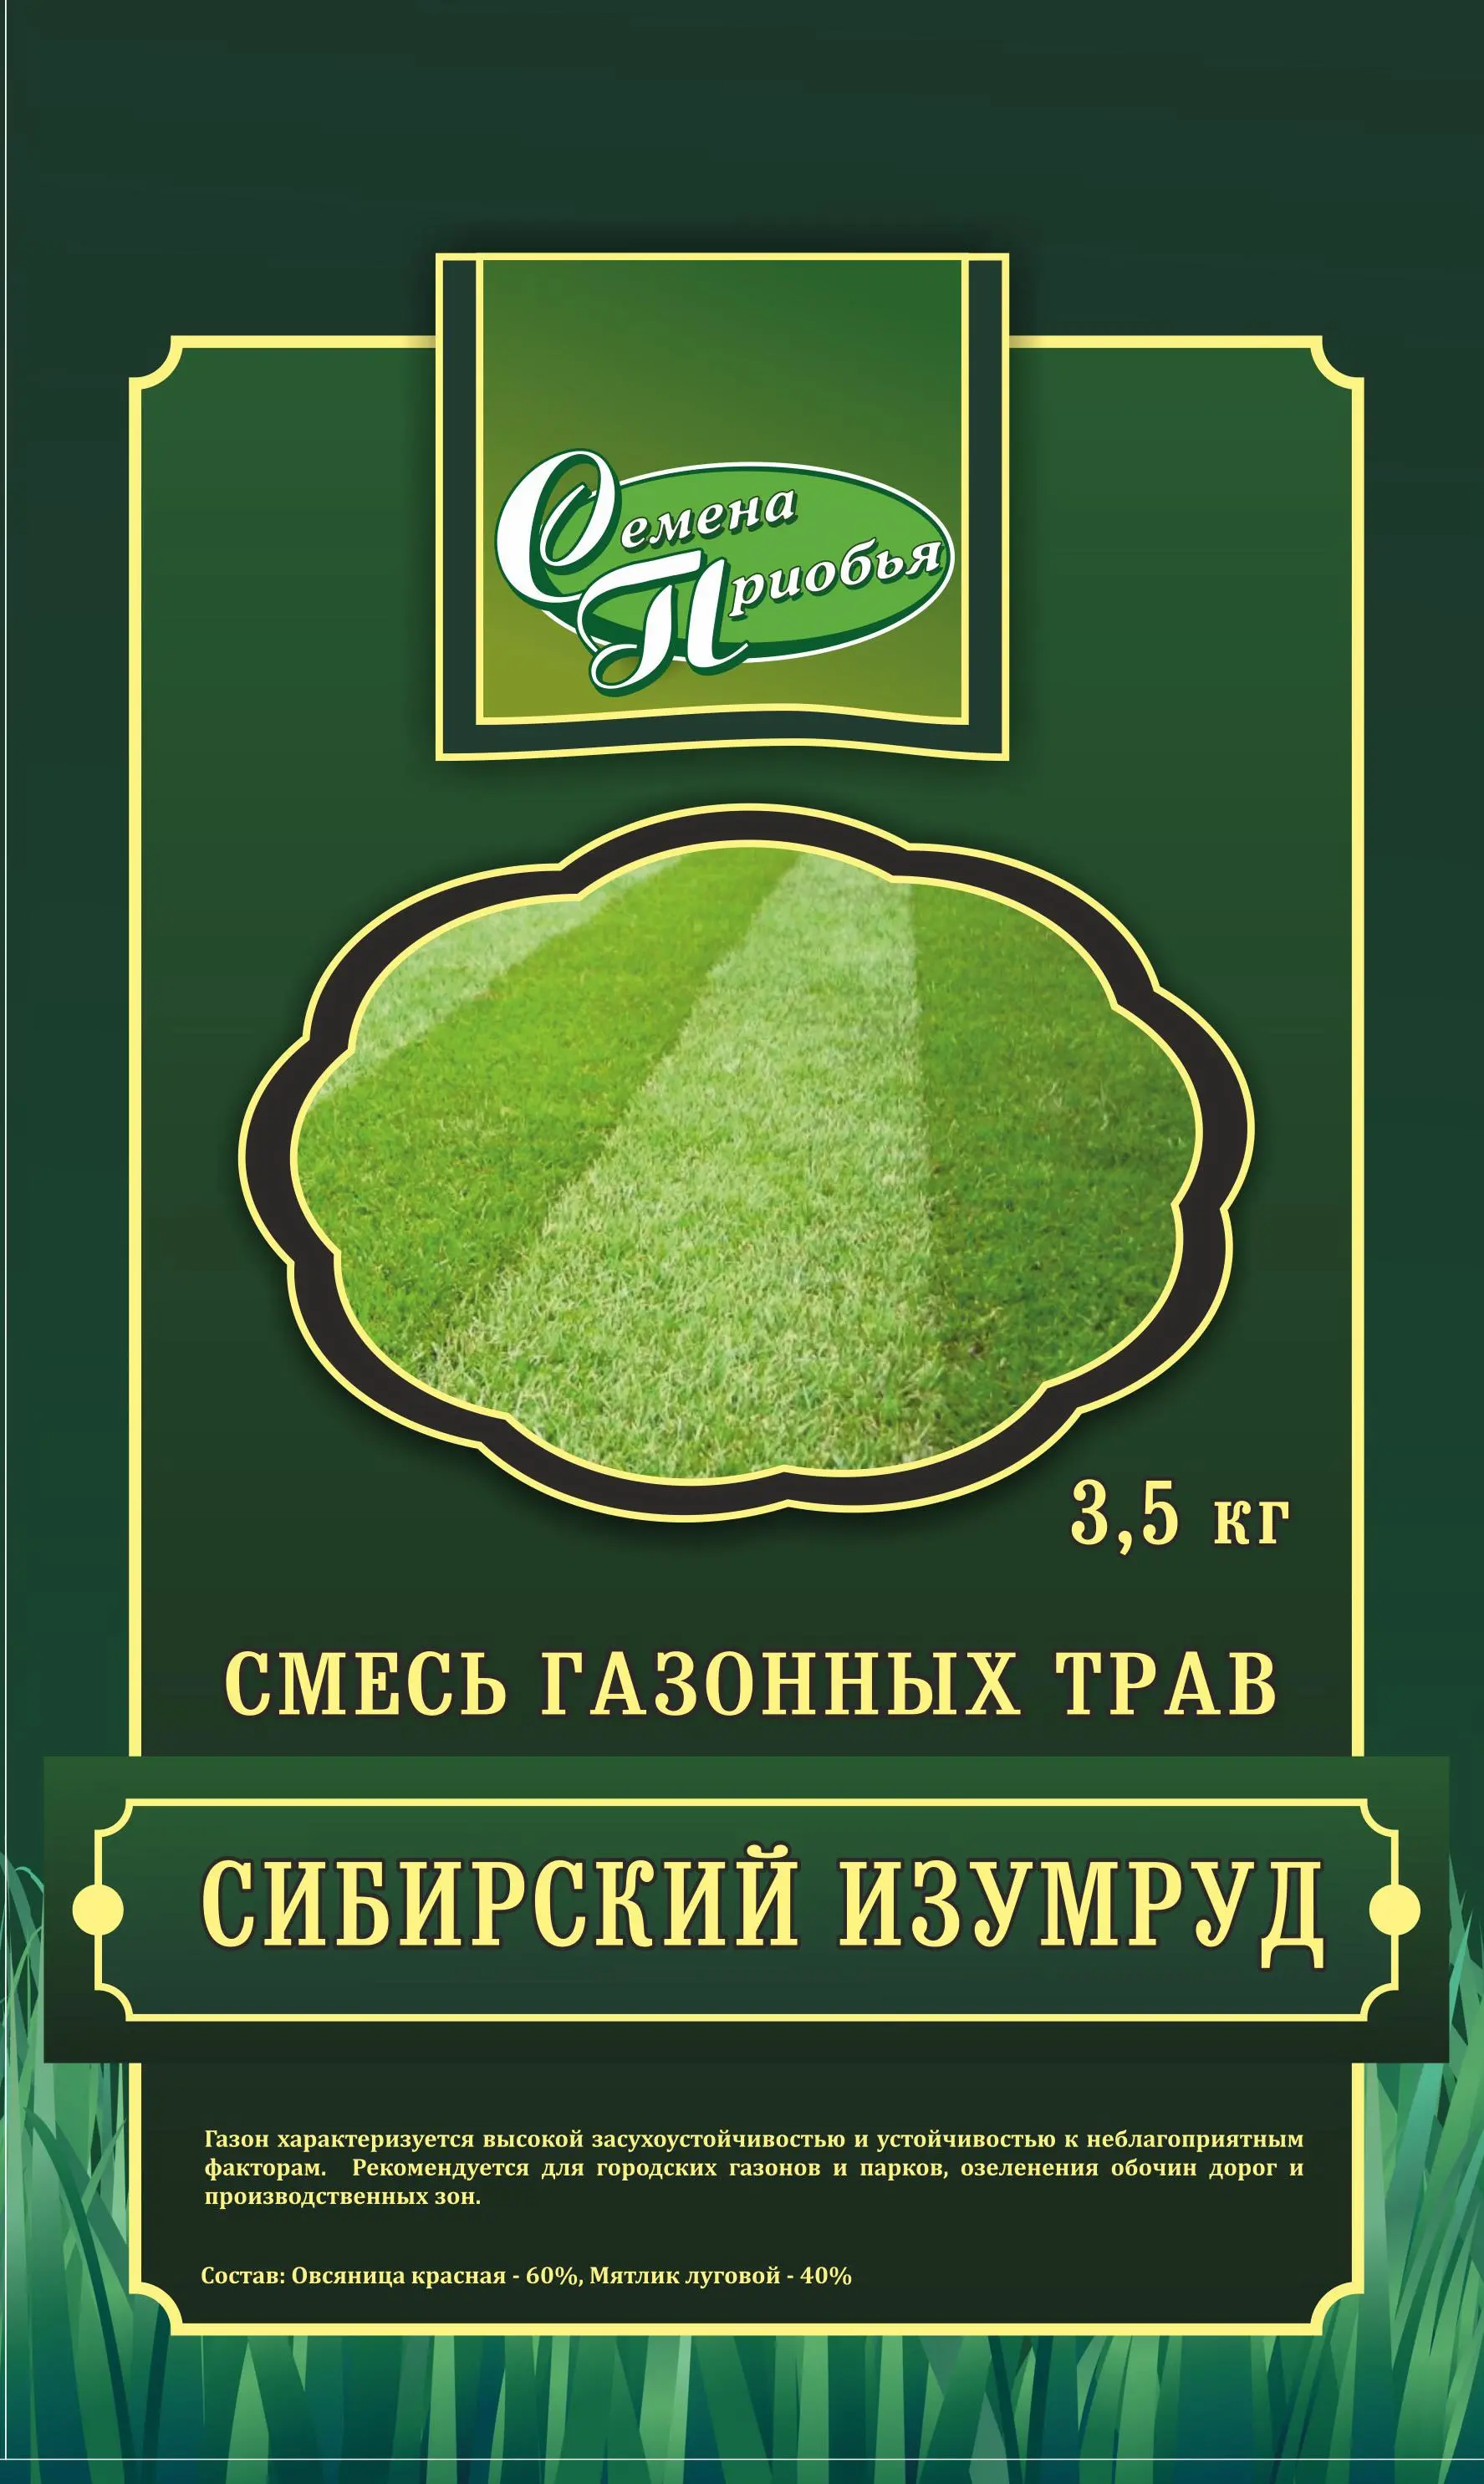 Газон Сибирский изумруд, 3,5 кг, Семена Приобья 